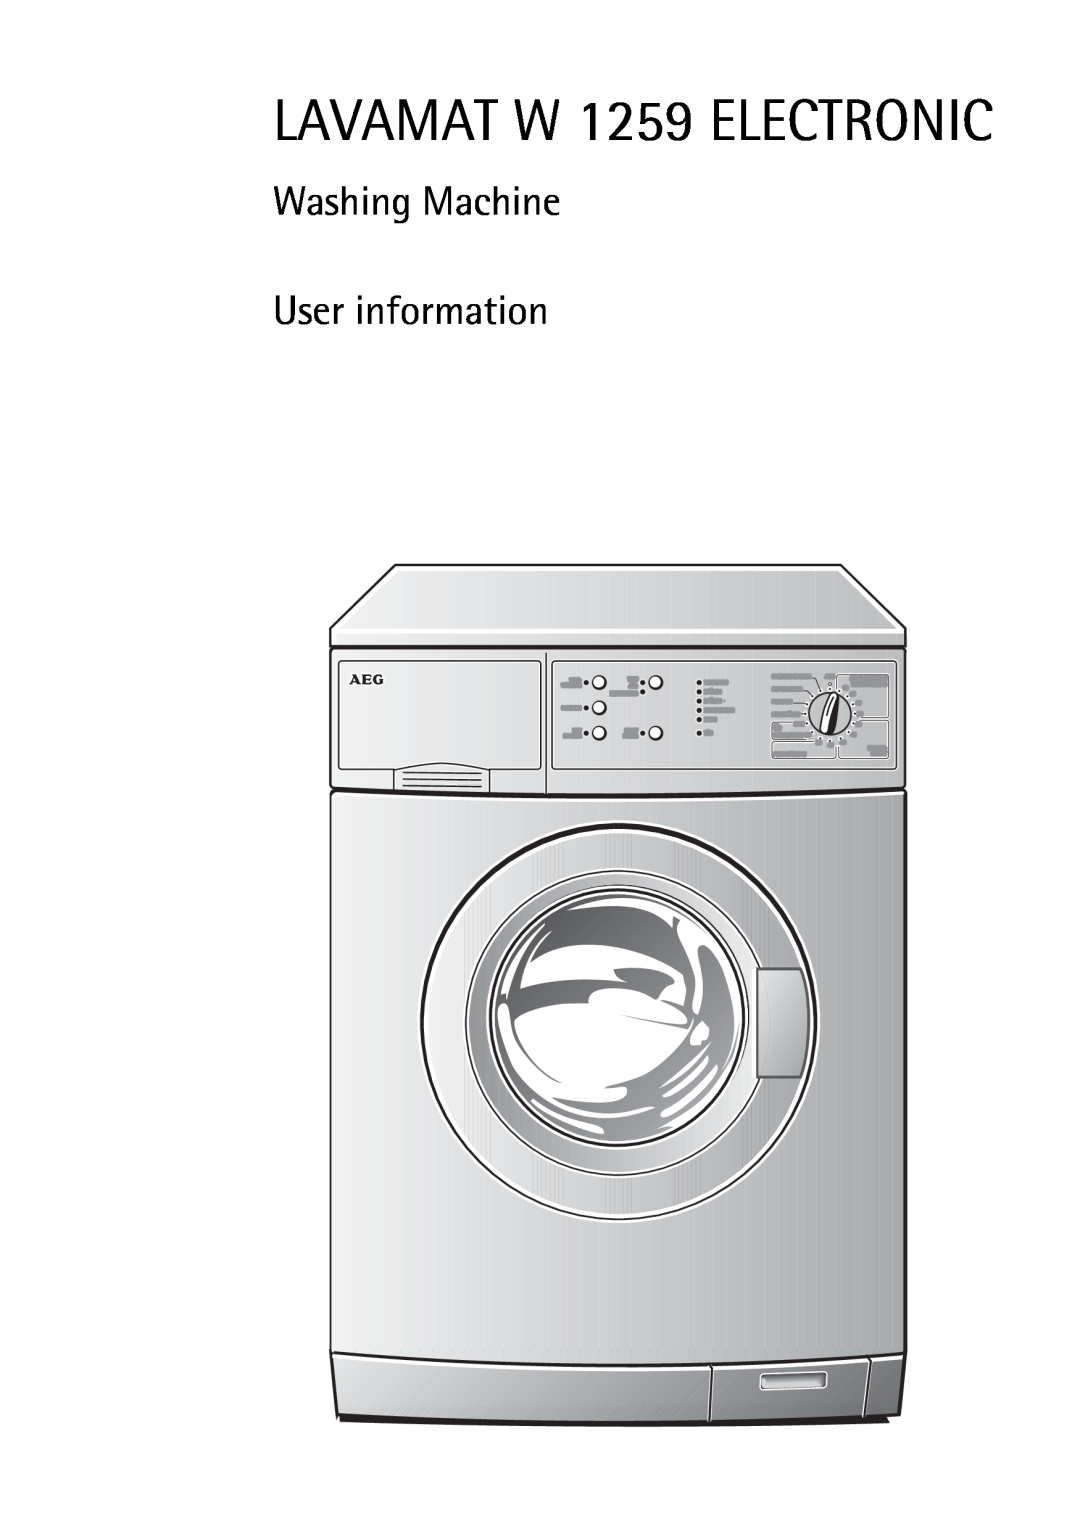 Electrolux manual LAVAMAT W 1259 ELECTRONIC, Washing Machine User information 